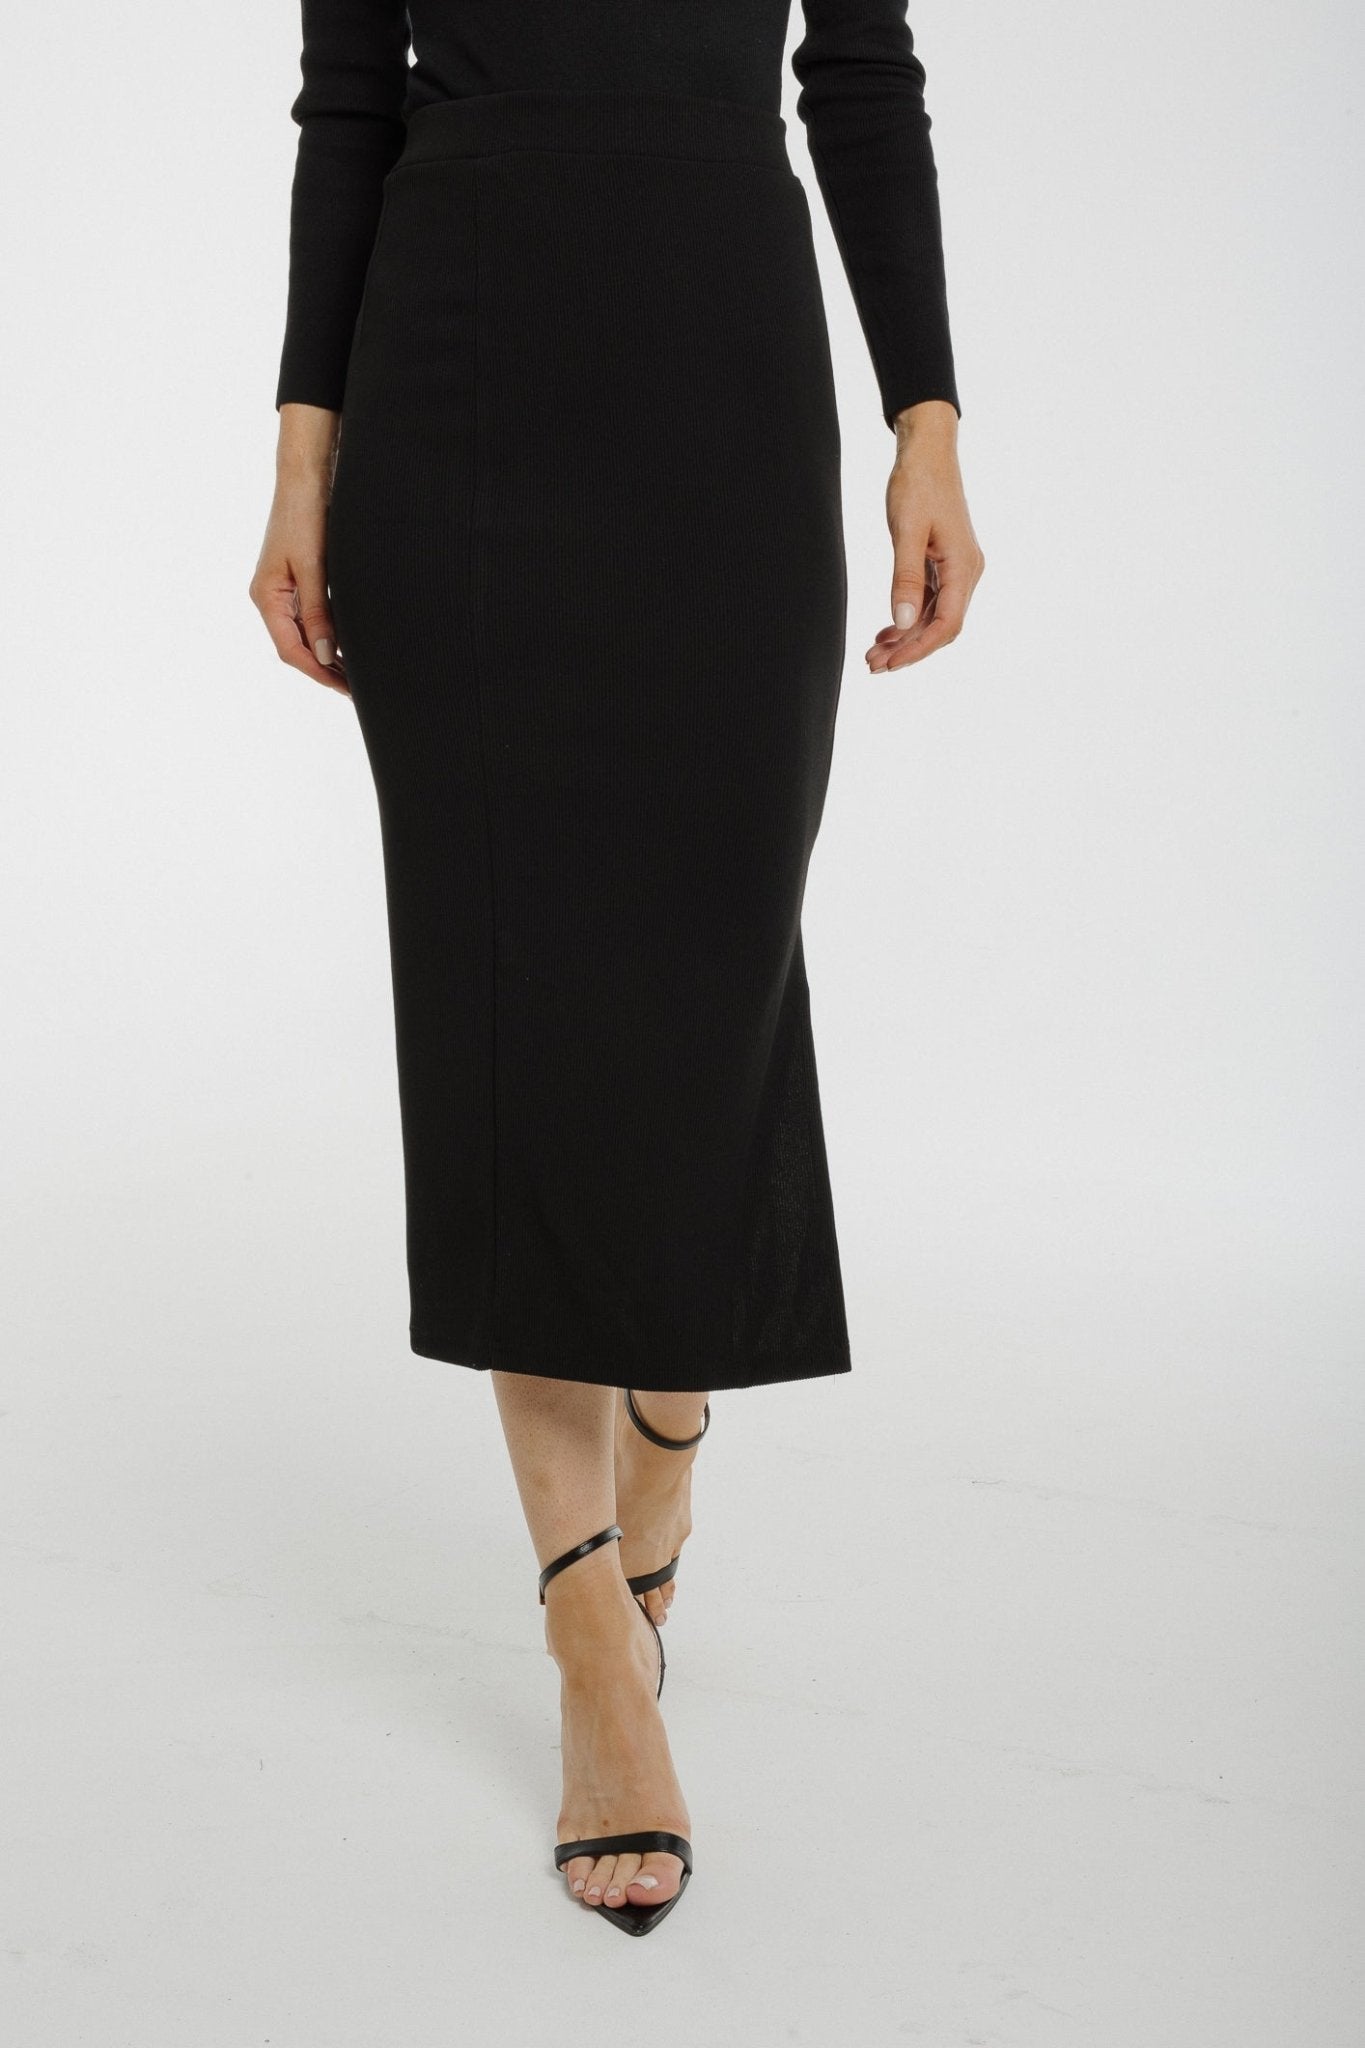 Freya Ribbed Midi Skirt In Black - The Walk in Wardrobe